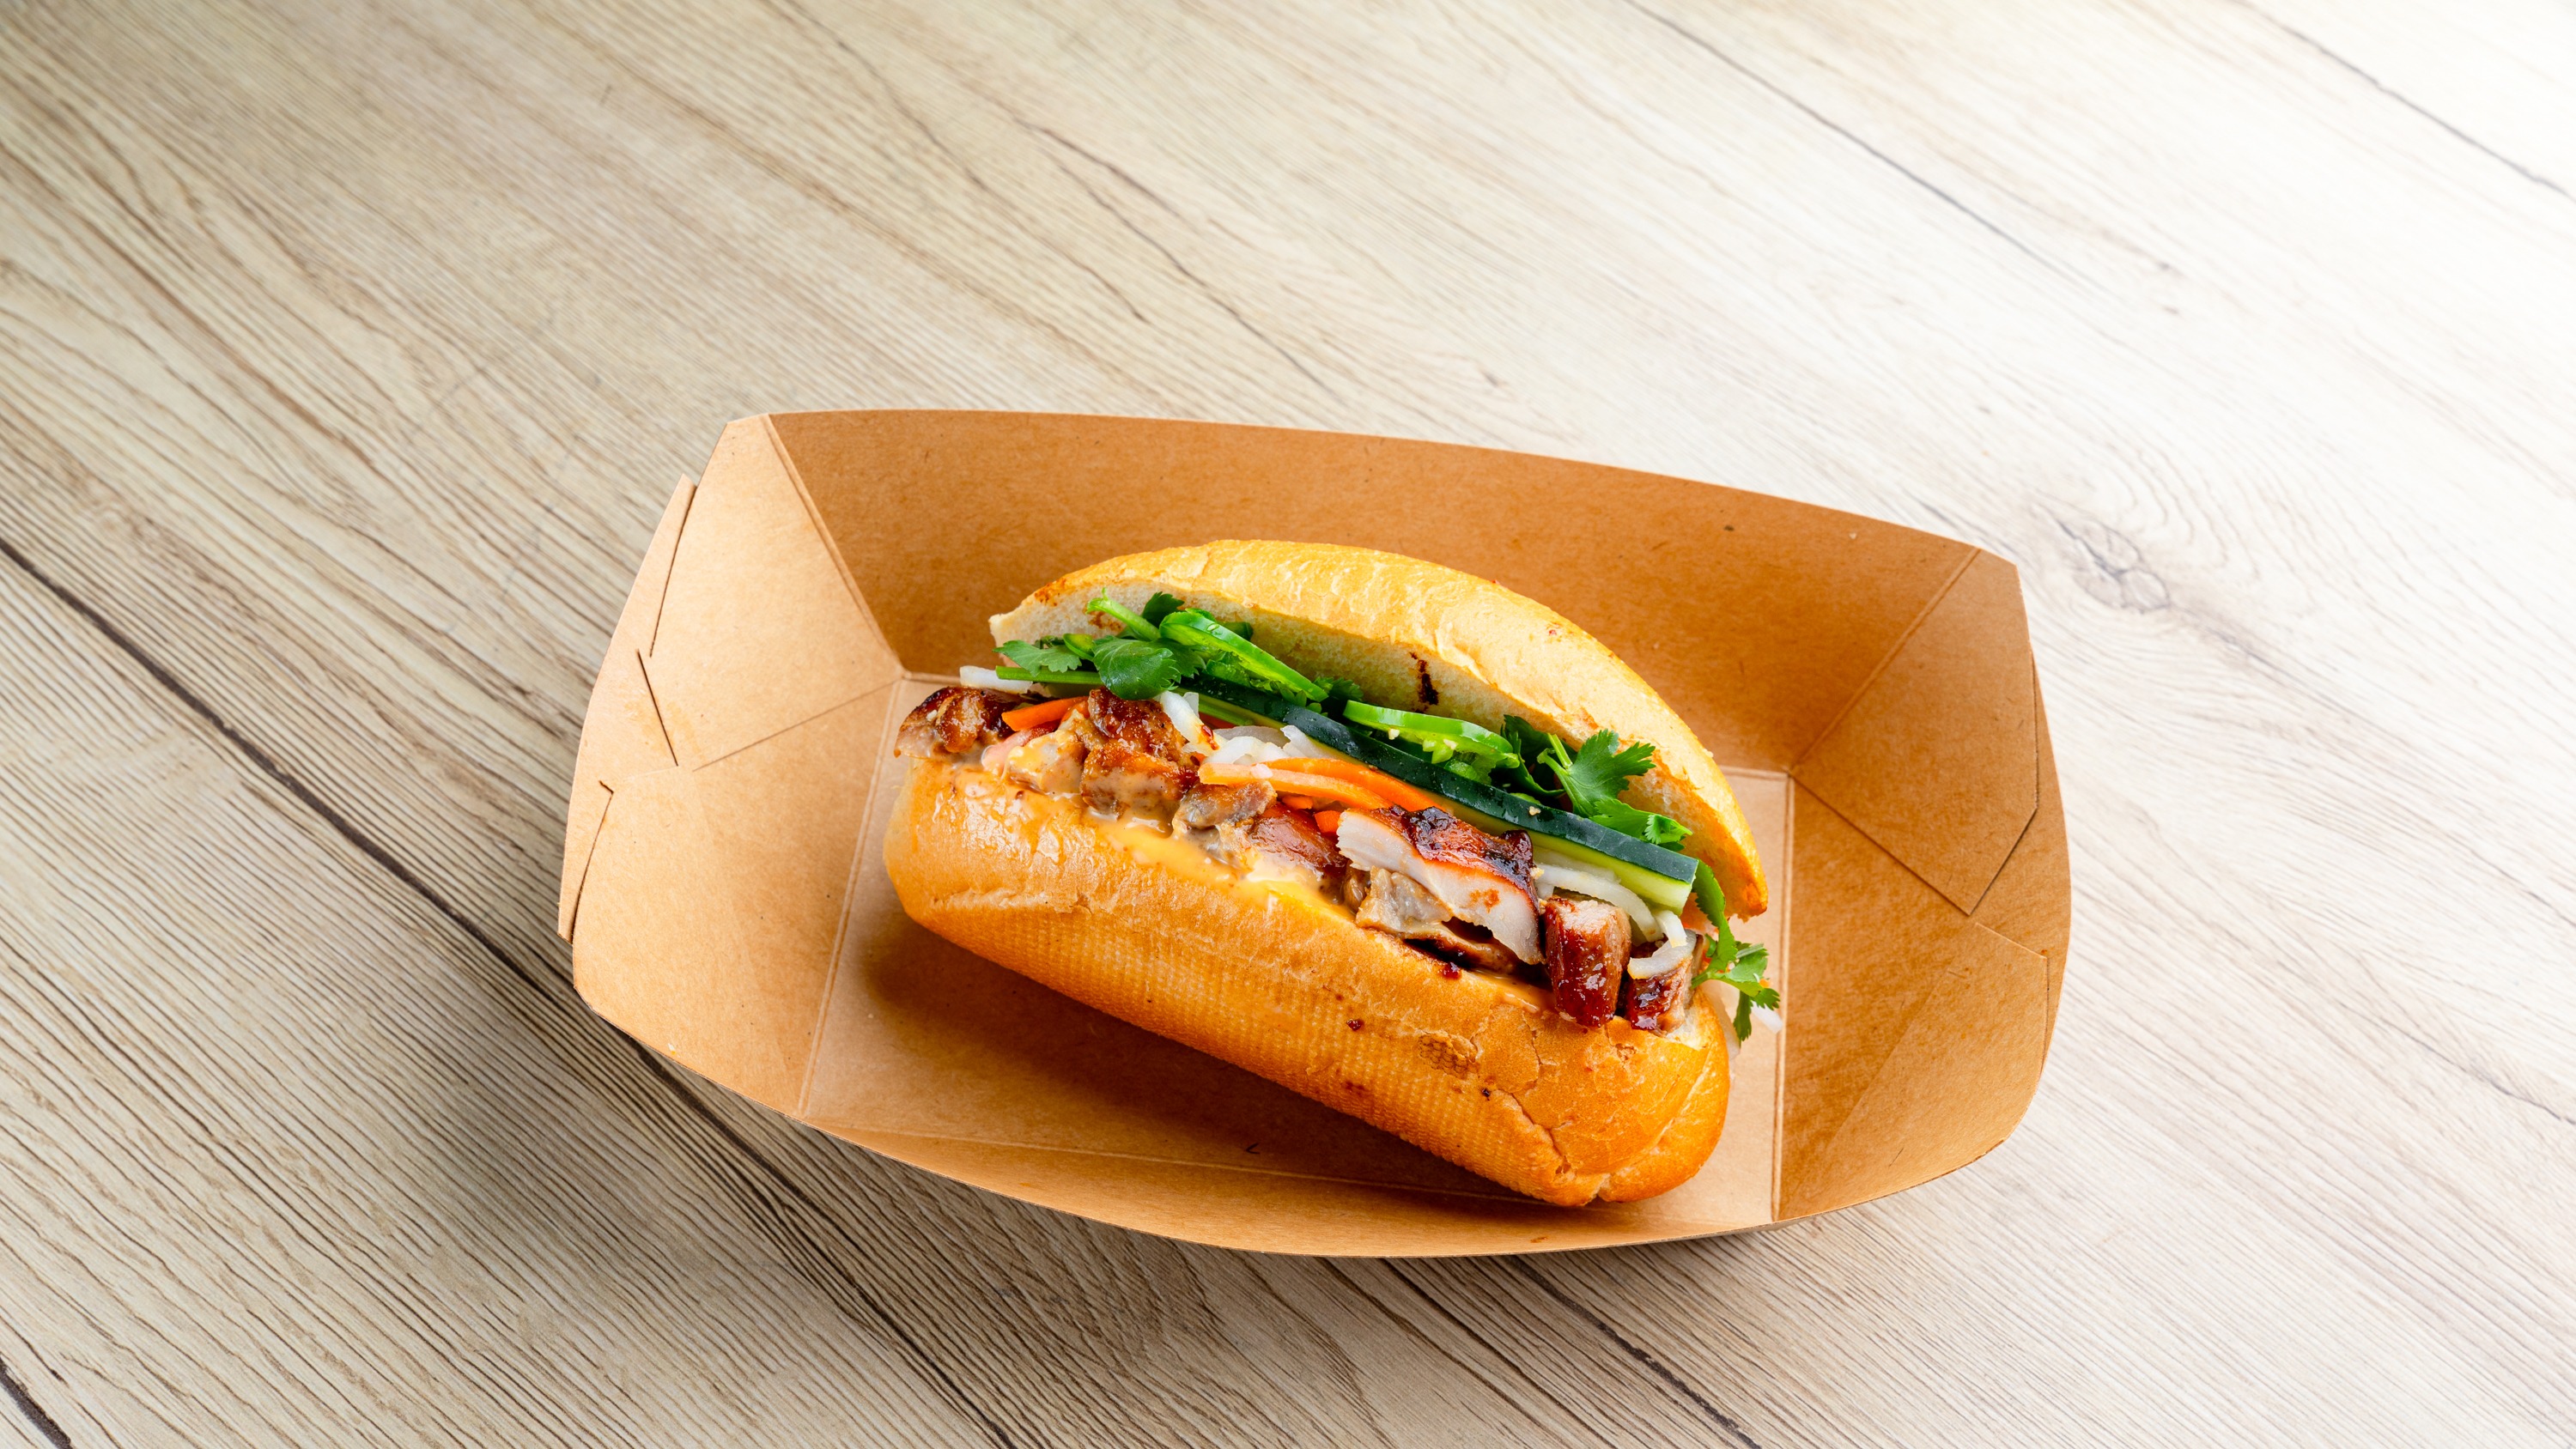 Order Sandwich - The Freshroll Mini food online from Freshroll store, Berkeley on bringmethat.com